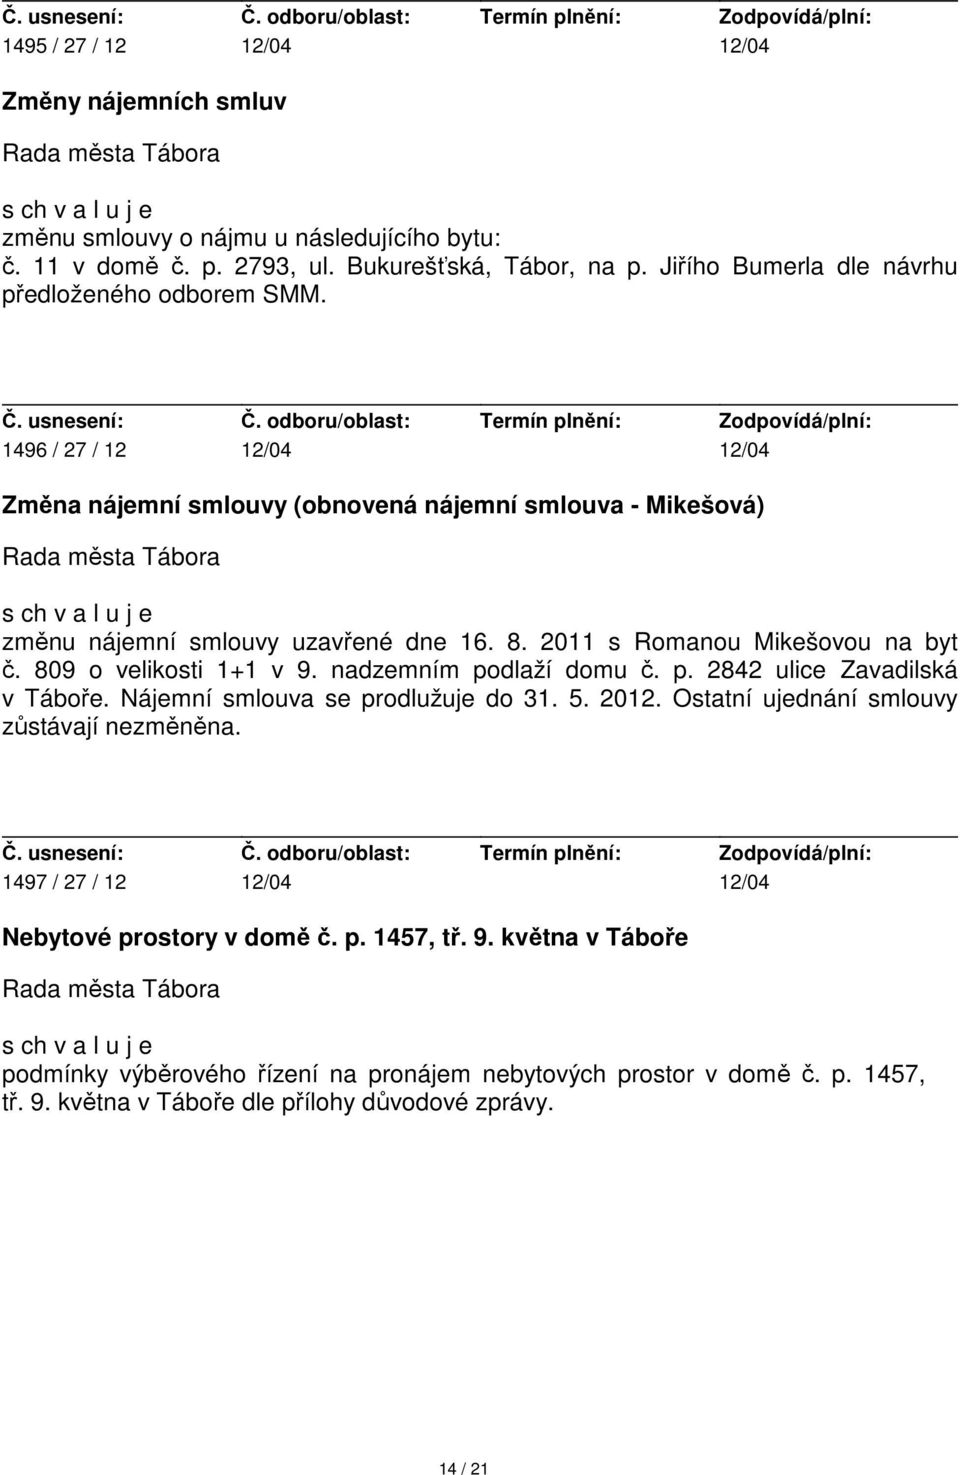 2011 s Romanou Mikešovou na byt č. 809 o velikosti 1+1 v 9. nadzemním podlaží domu č. p. 2842 ulice Zavadilská v Táboře. Nájemní smlouva se prodlužuje do 31. 5. 2012.